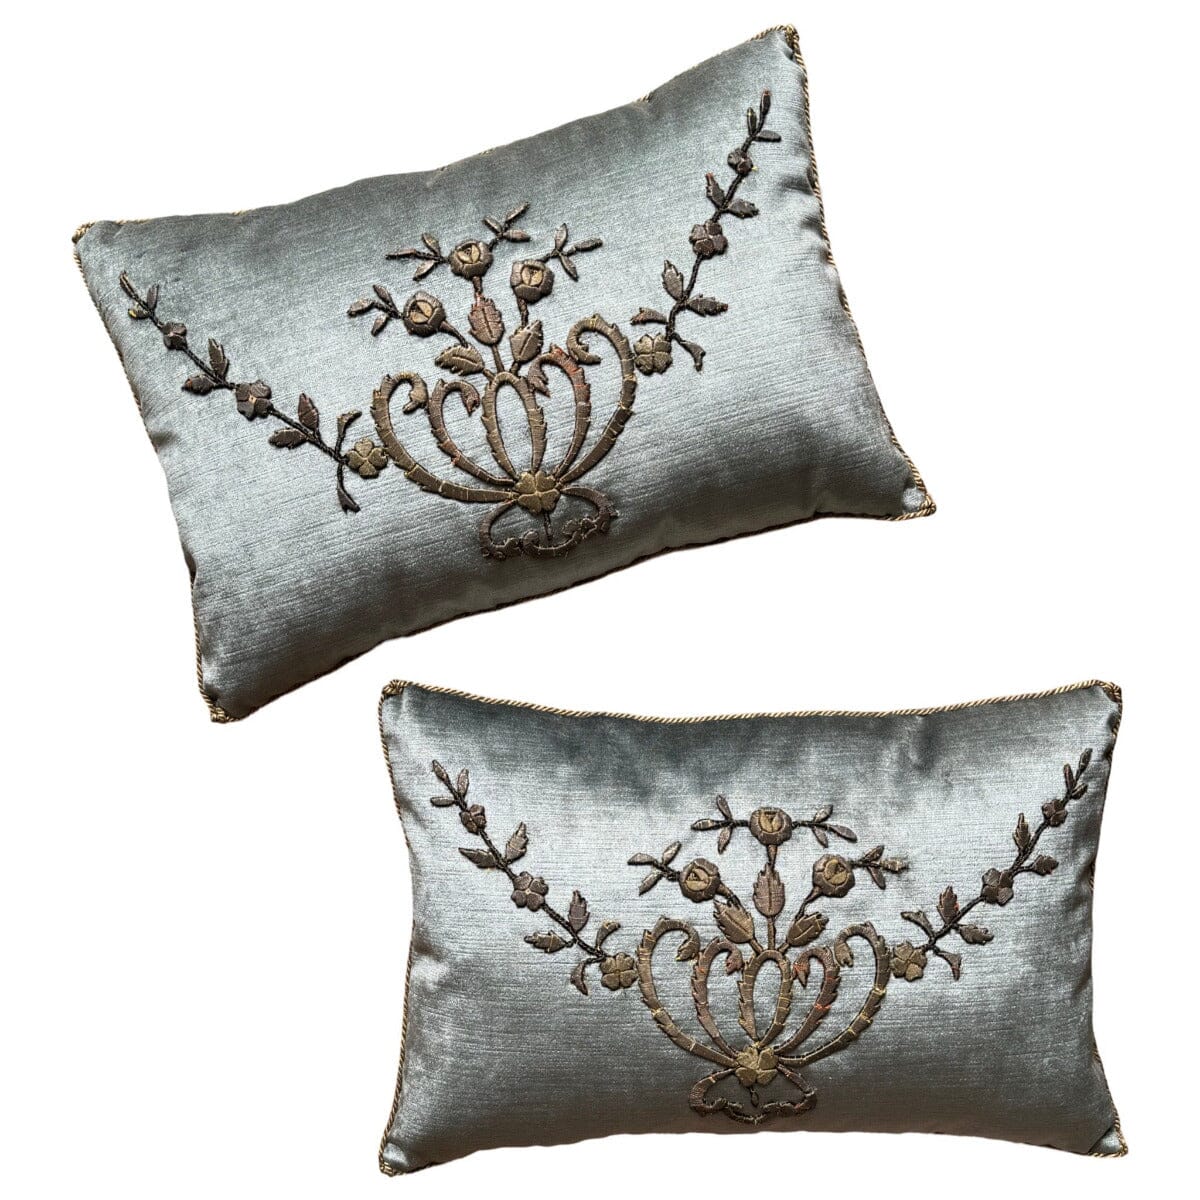 Antique Ottoman Empire Gold Metallic Embroidery (#E022324A&B | 13 x 19 1/2") New Pillows B. Viz Design 